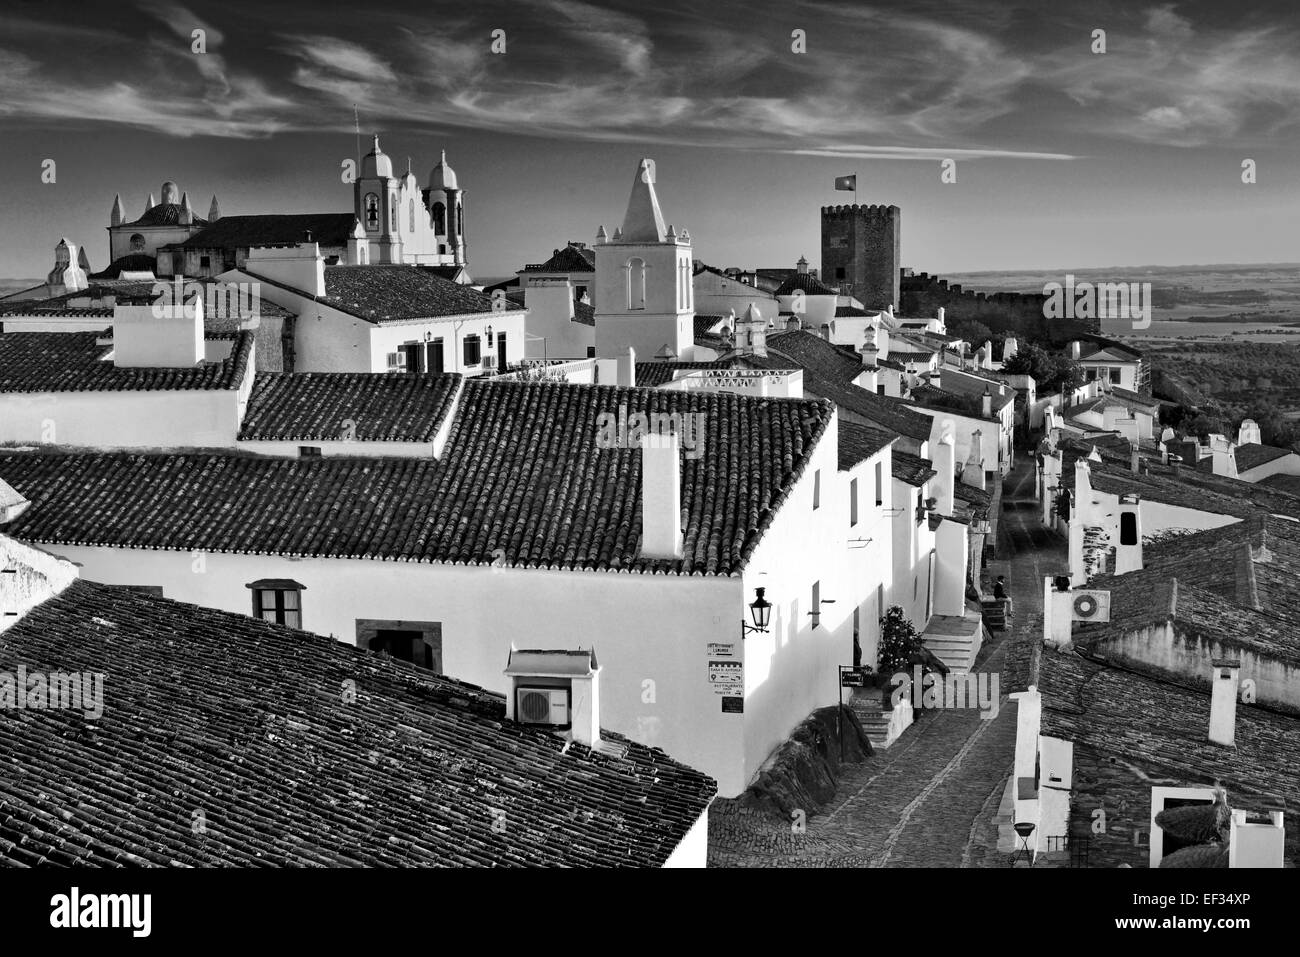 Portugal, Alentejo: Blick auf das historische Dorf Monsaraz in schwarz / weiß-version Stockfoto